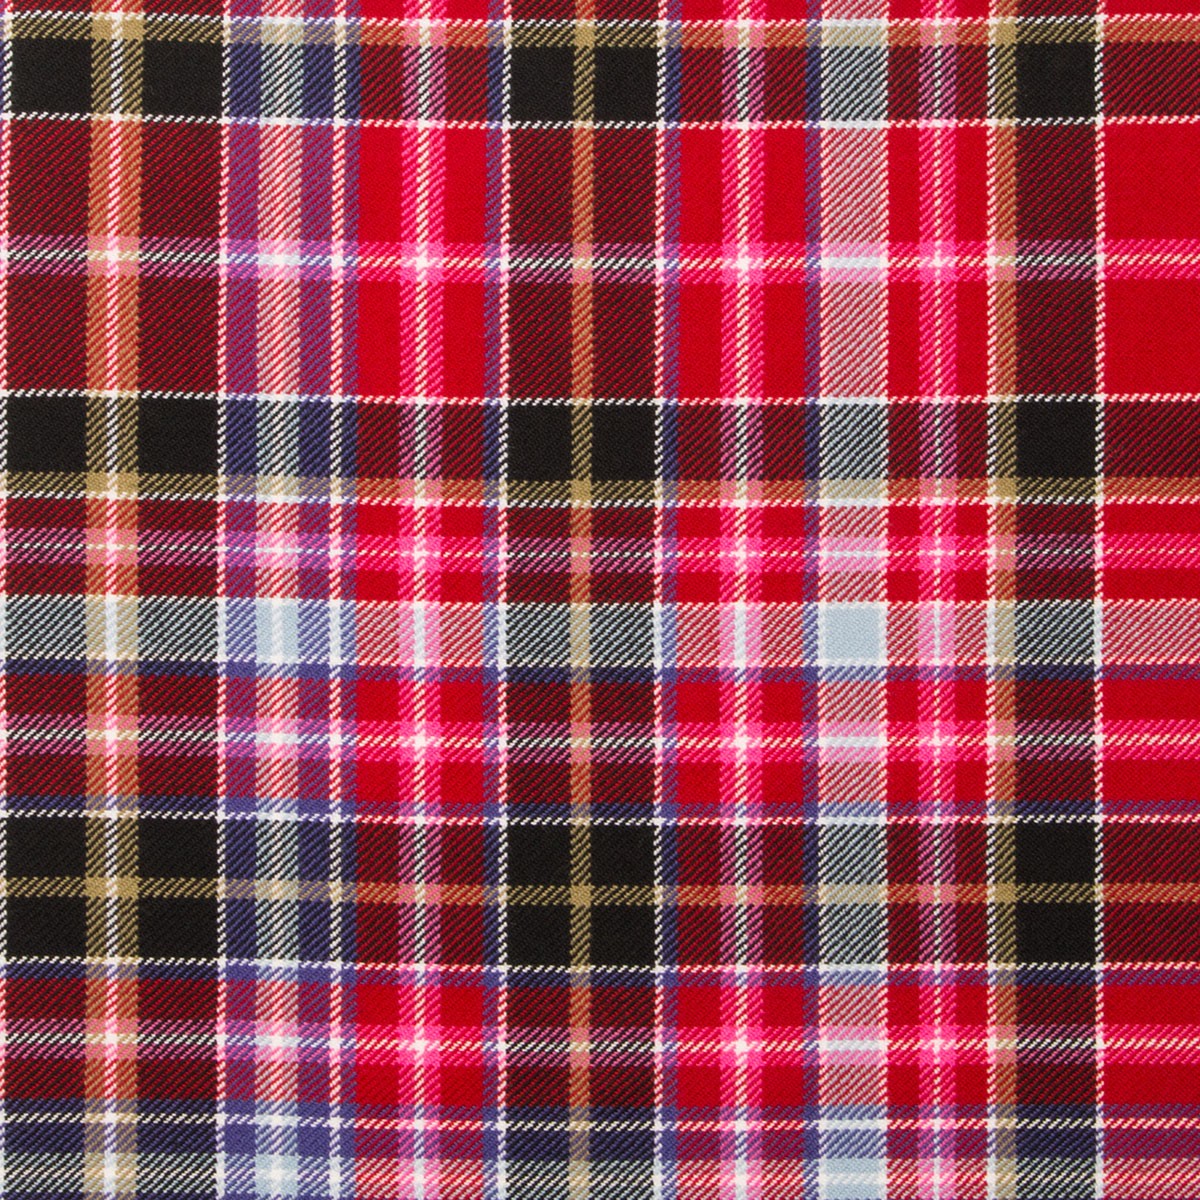 Aberdeen Tartan Fabric